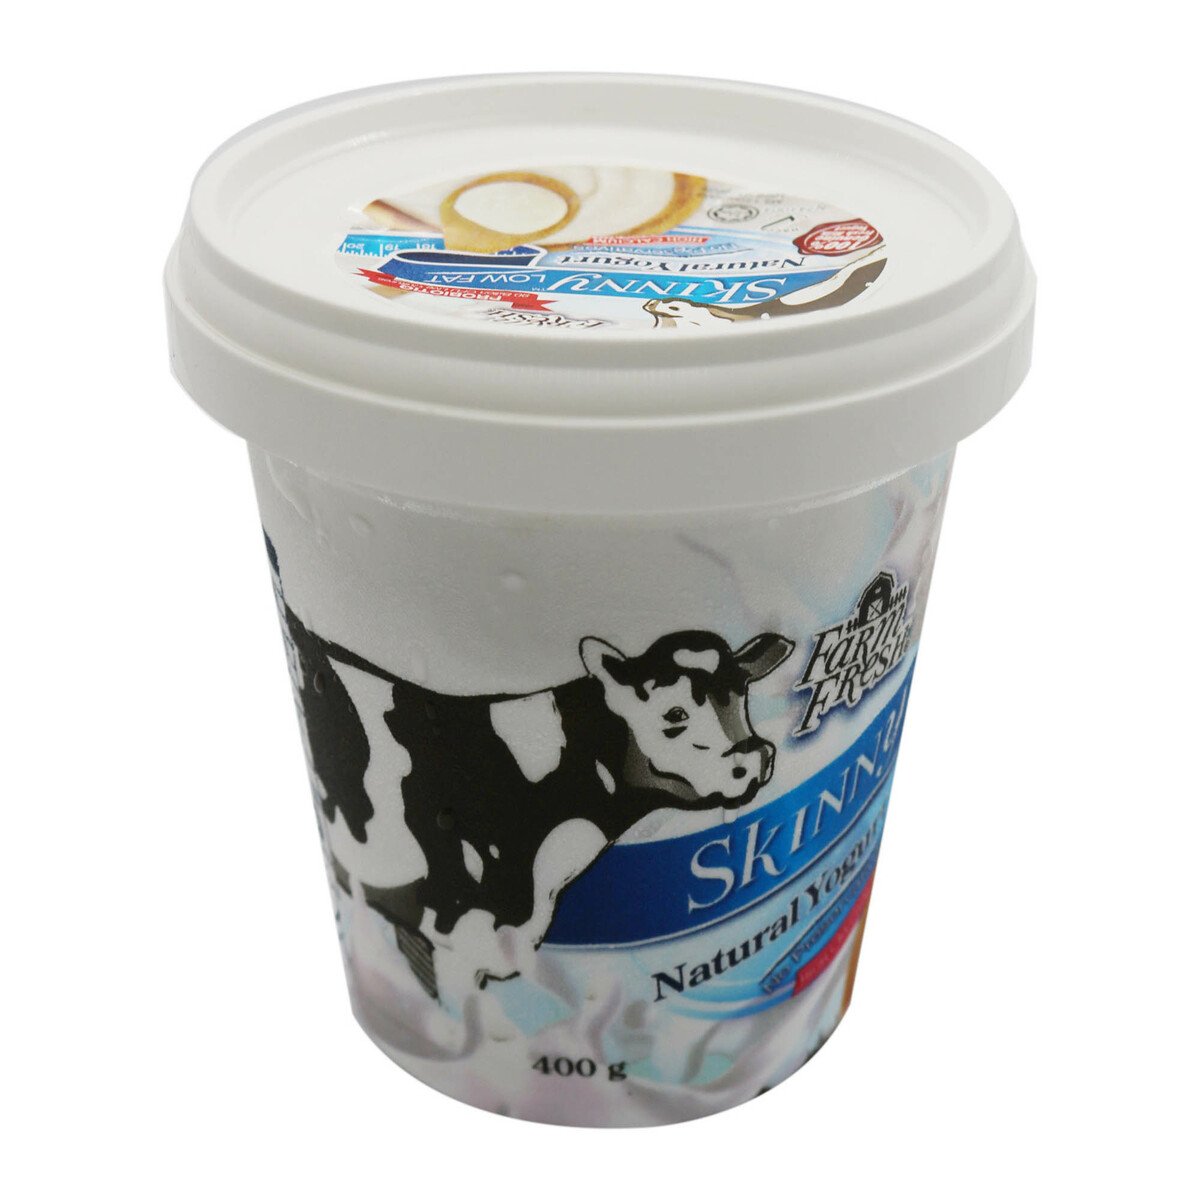 Farm Fresh Skinny Yogurt Tub 400g